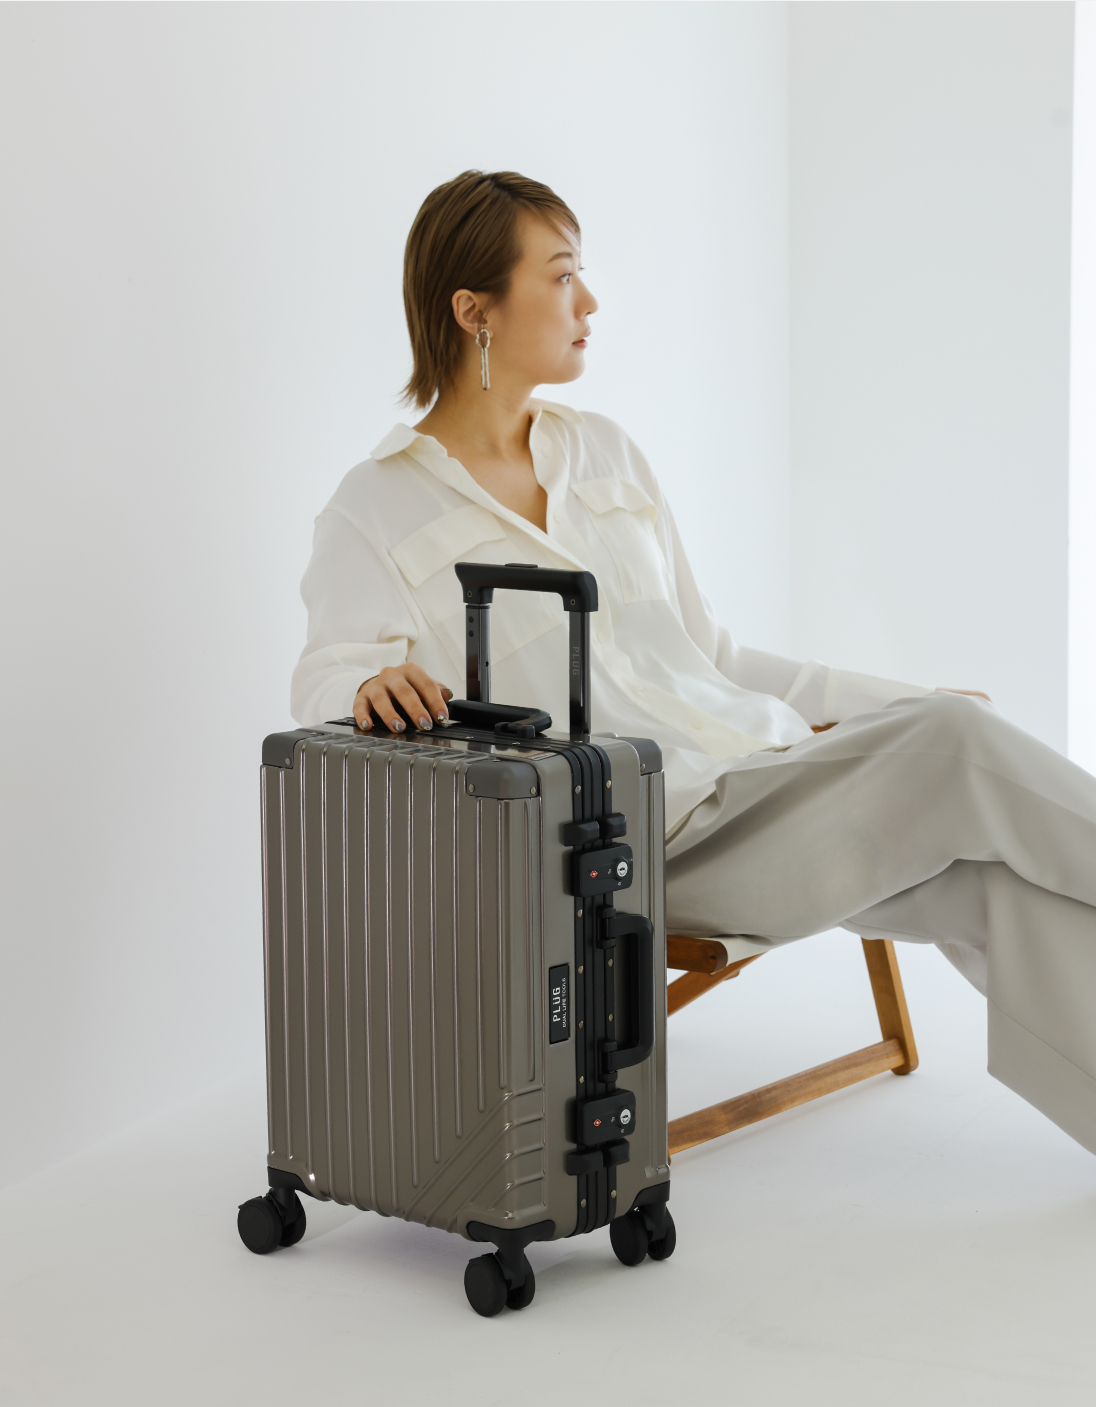 ウッドと帆布のオシャレなチェアに座り、スーツケースに手をかけている女性モデル